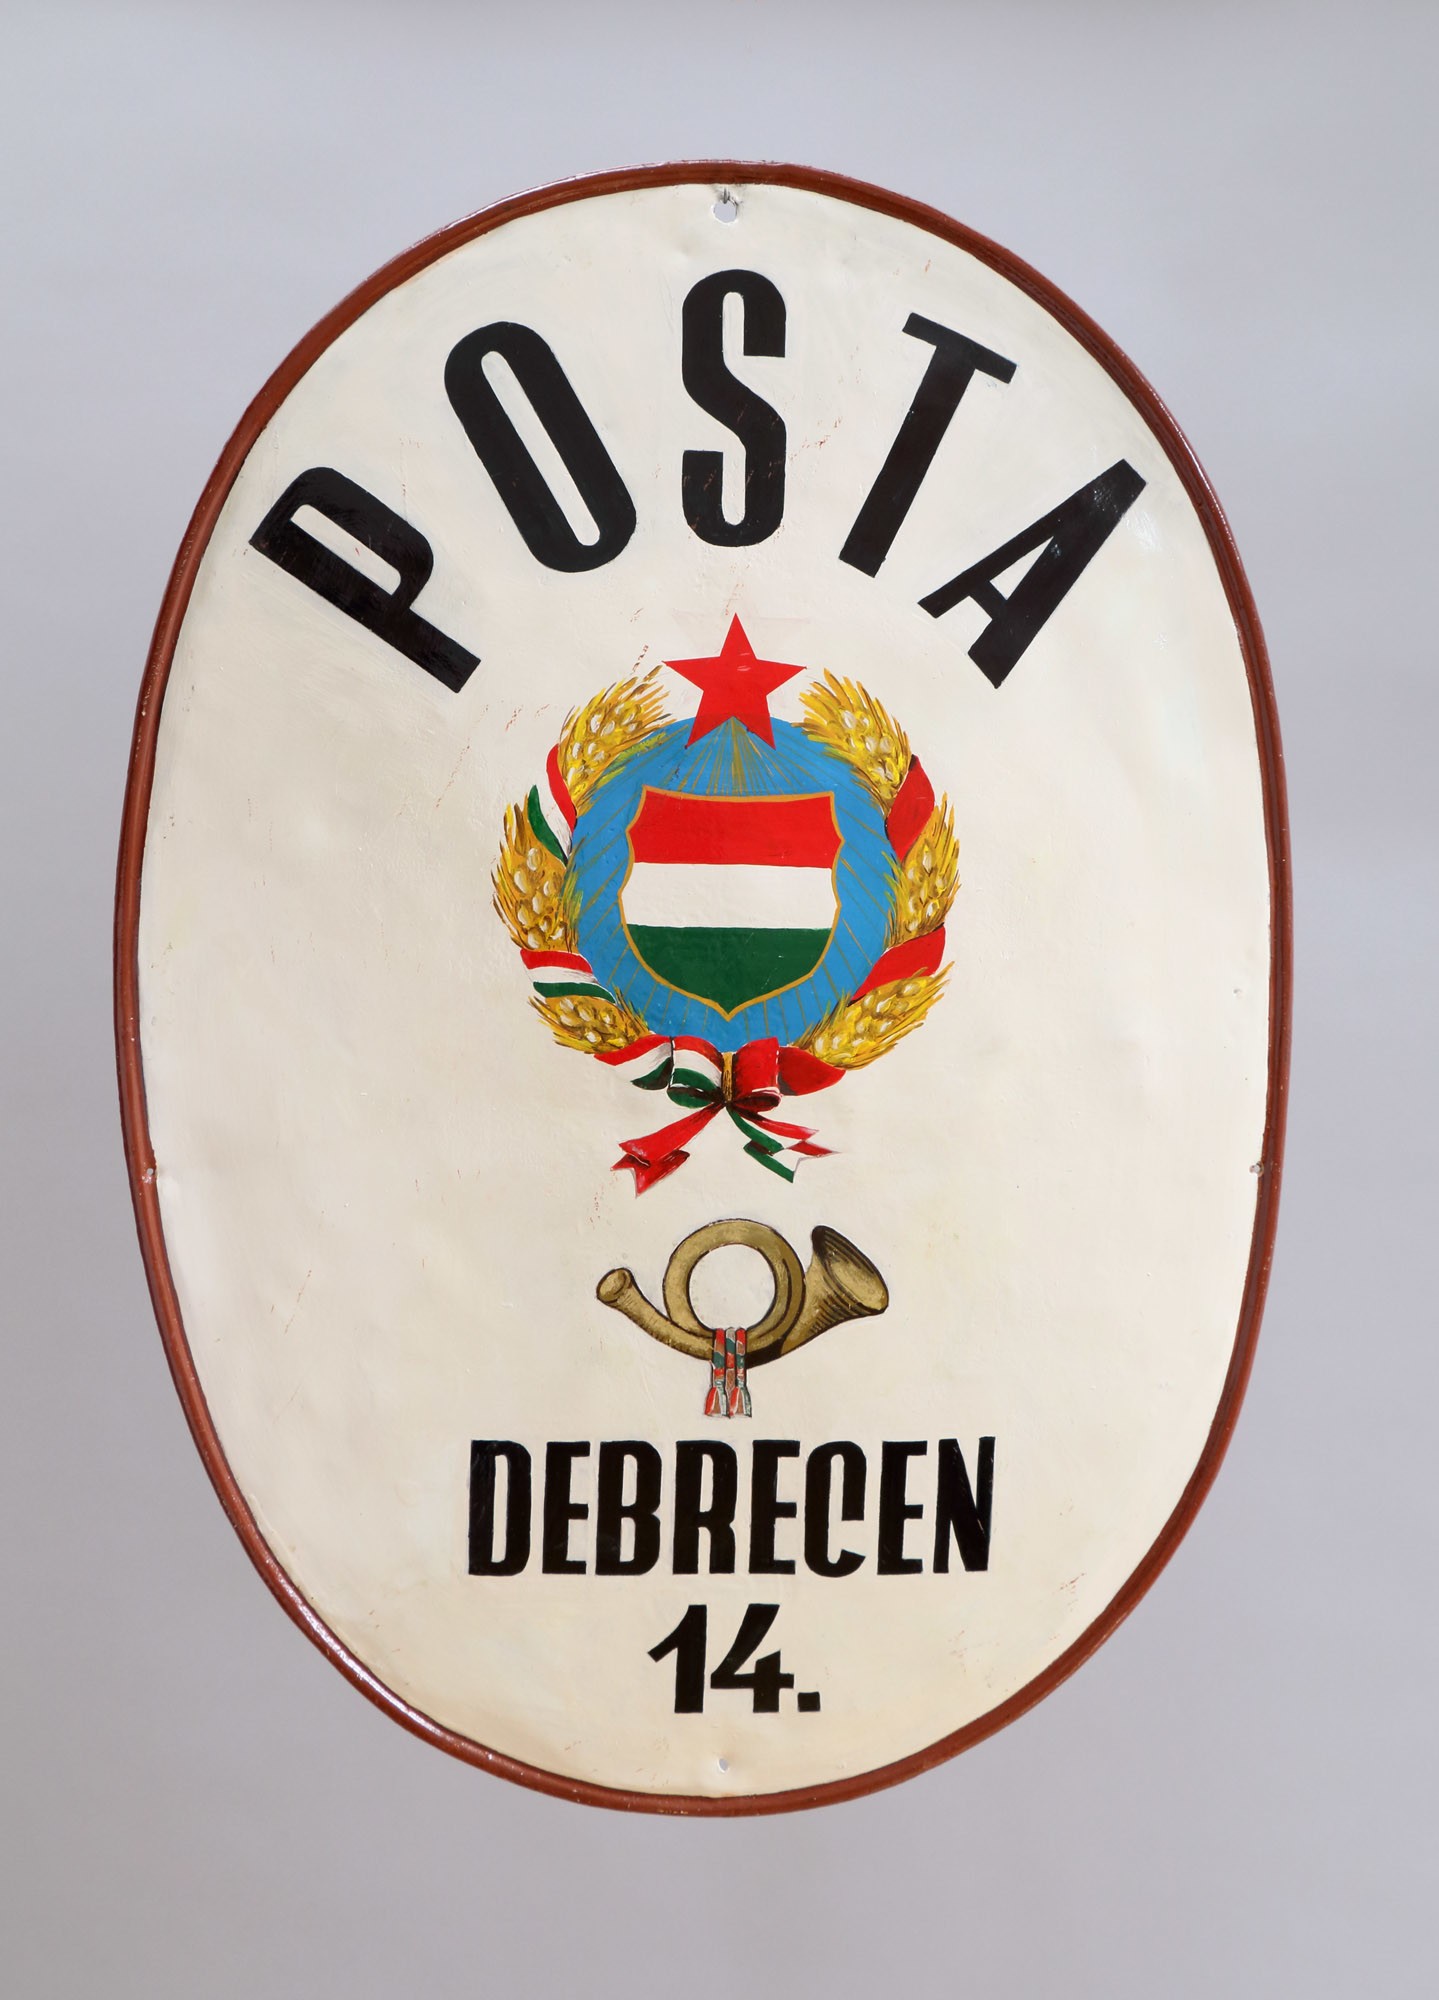 Címtábla „POSTA DEBRECEN 14.” (Postamúzeum CC BY-NC-SA)